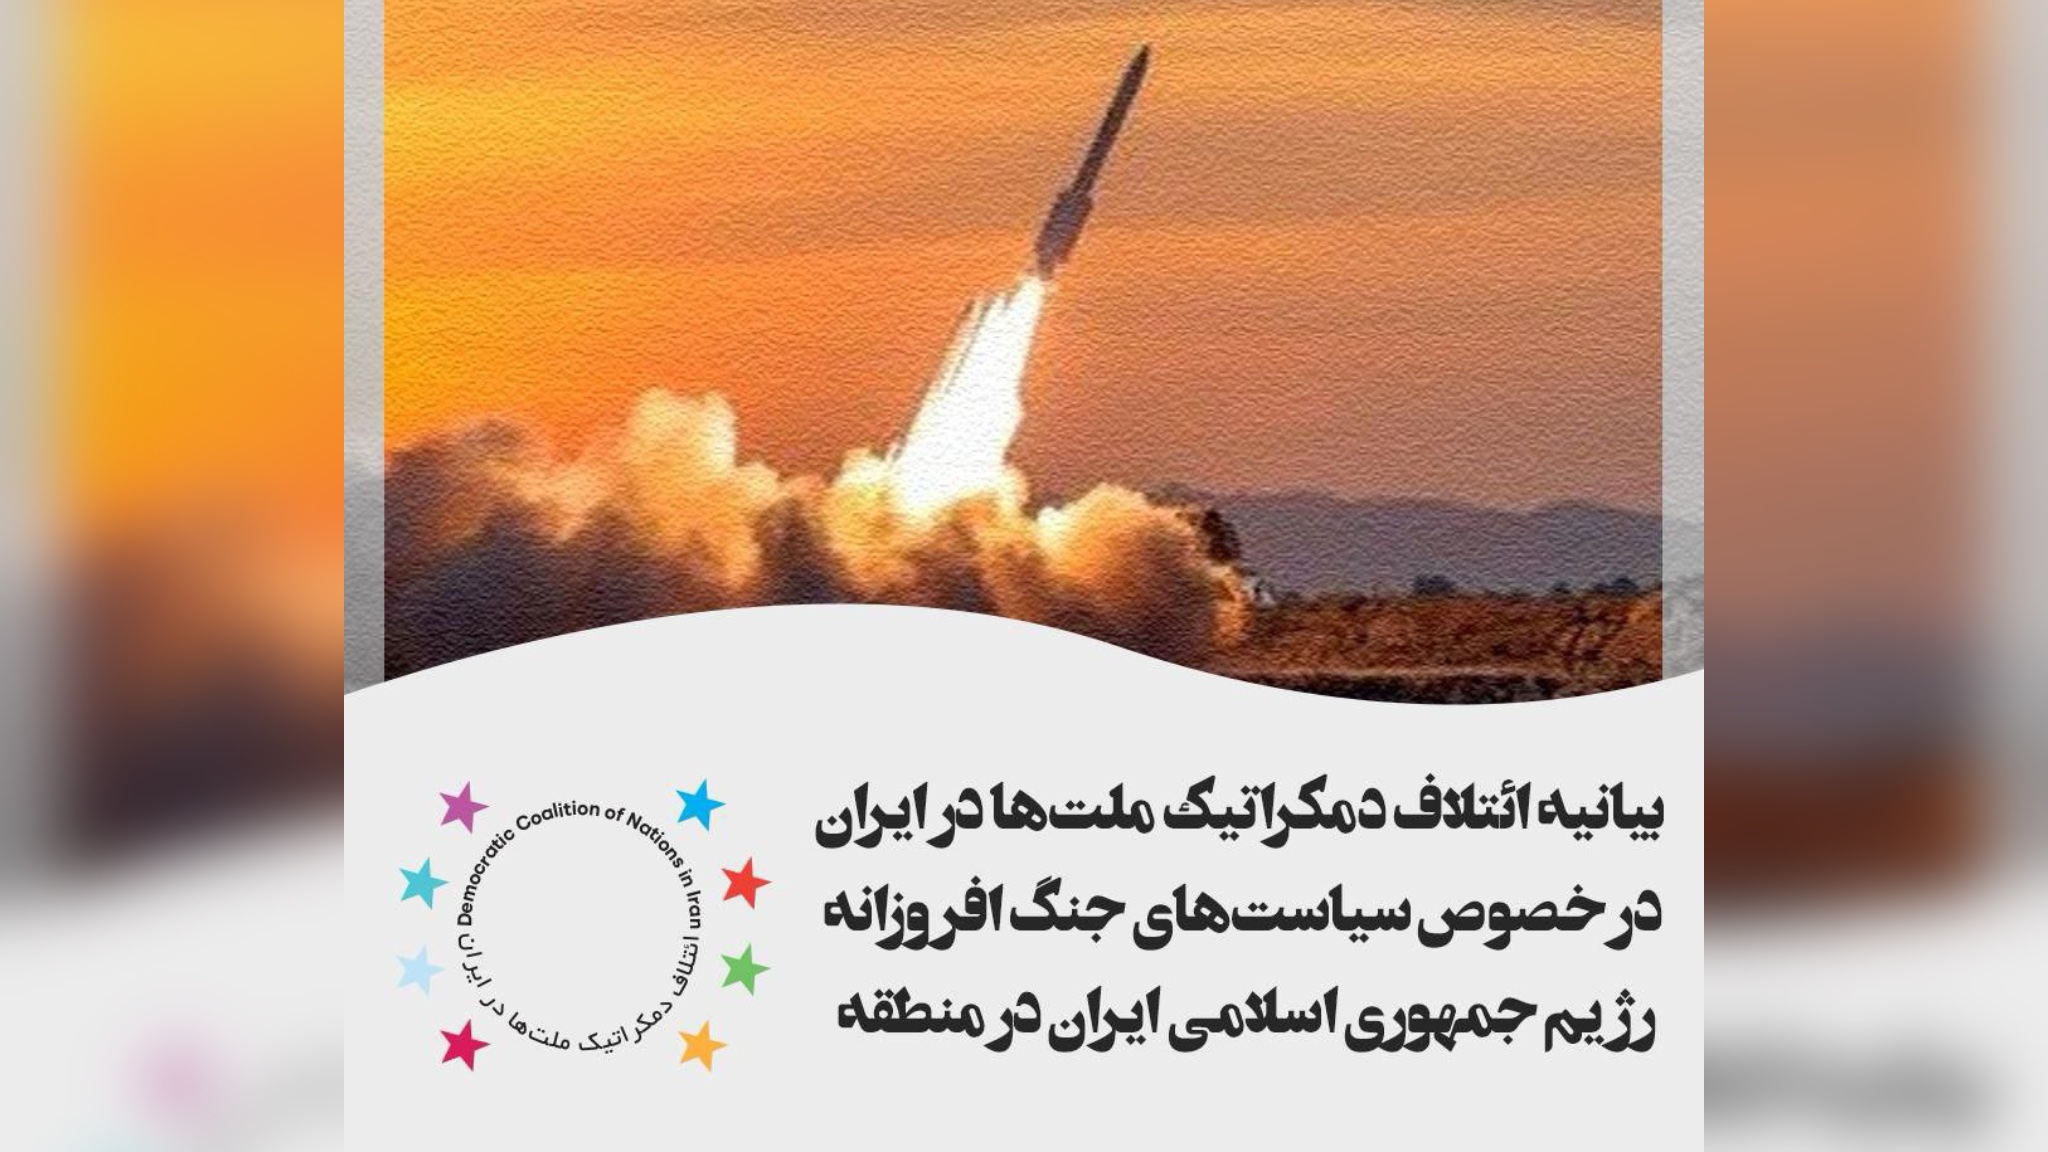 بیانیه ائتلاف دمکراتیک ملت ها در ایران در خصوص سیاستهای جنگ افروزانه رژیم جمهوری اسلامی ایران در منطقه